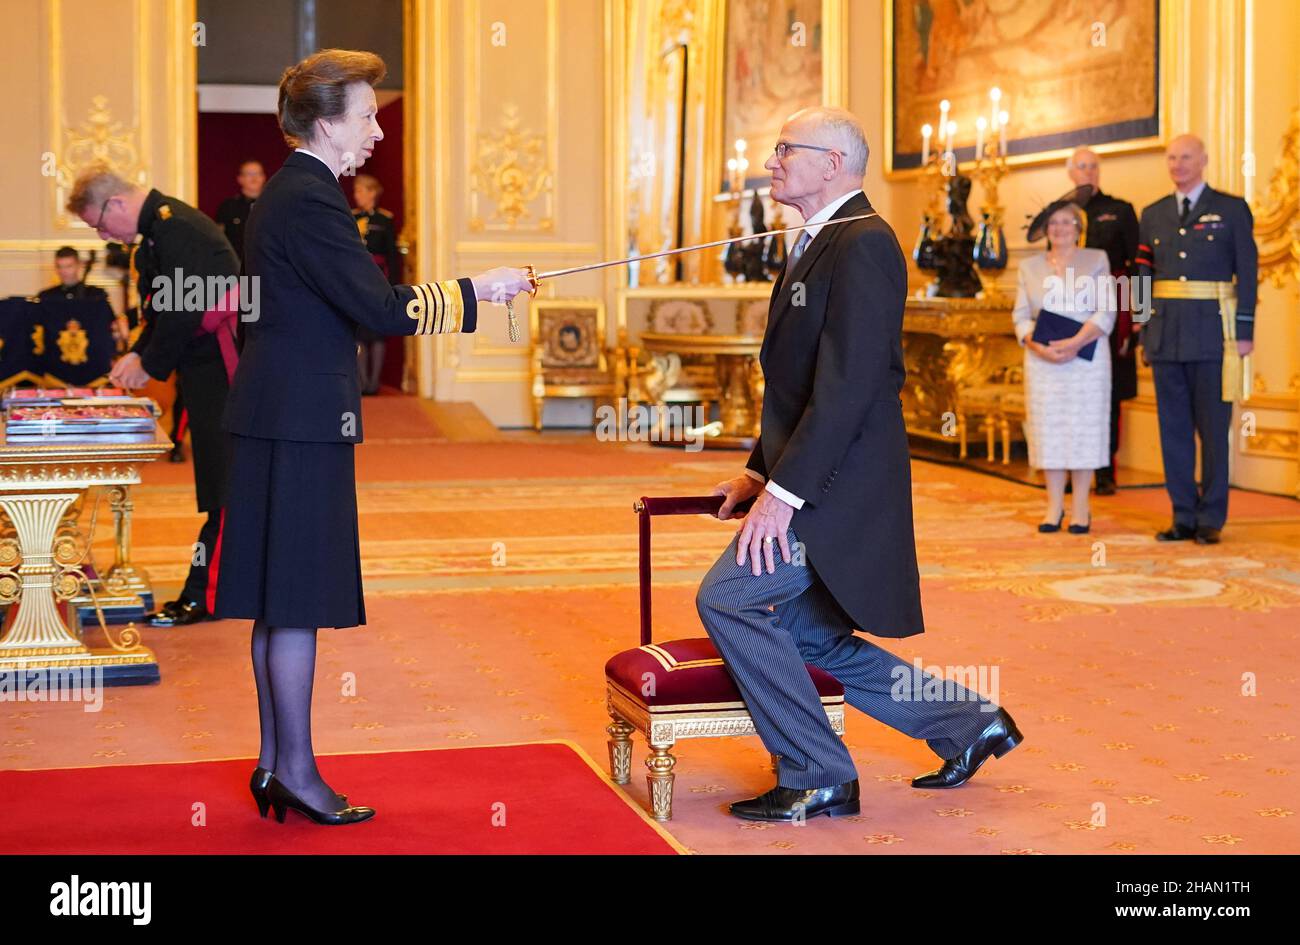 Le professeur Sir John Sambles de Crediton est titulaire d'un baccalauréat en chevalier de la princesse royale au château de Windsor.Date de la photo: Mardi 14 décembre 2021. Banque D'Images